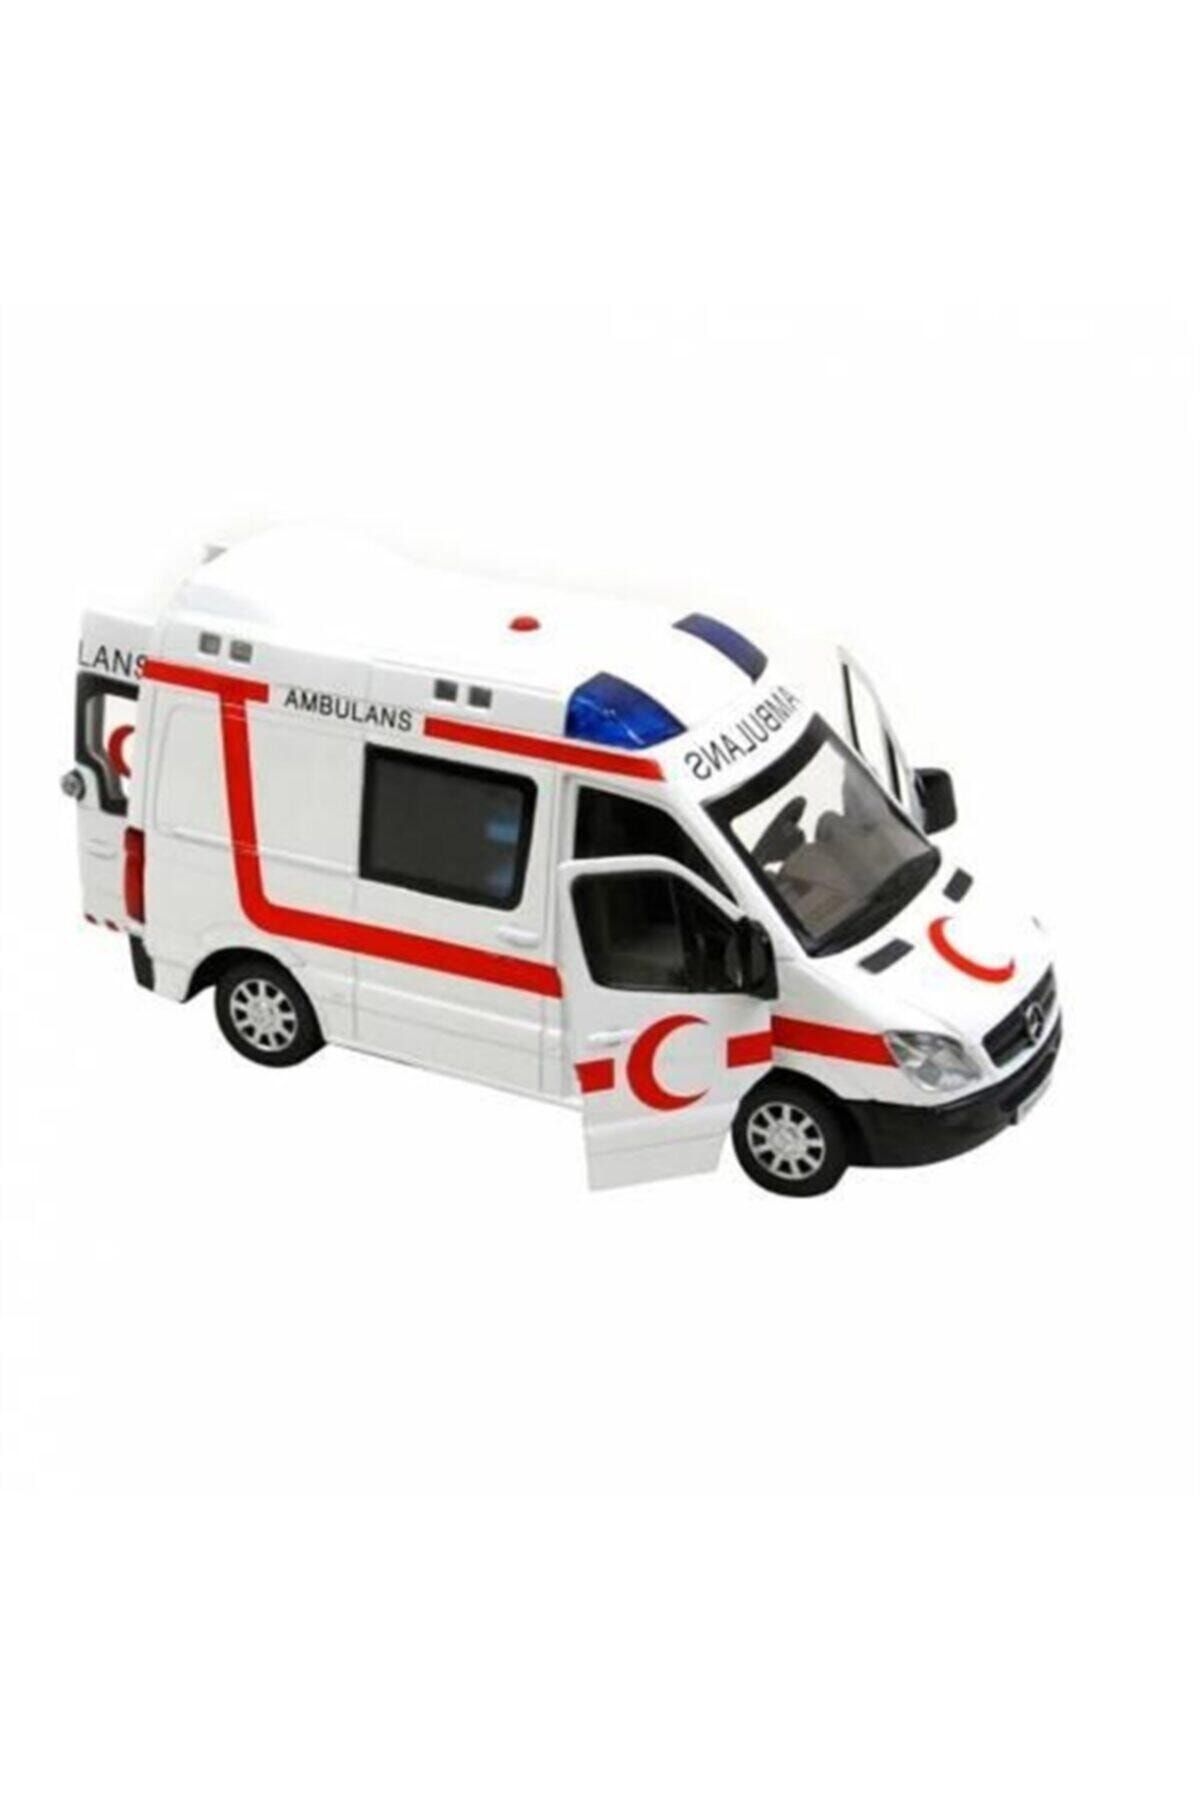 Vardem Çekbırak Işıklı Sesli Ambulans, Polis, Itfaiye Ve Jandarma 1:30 Ölçek Oyuncak Araba